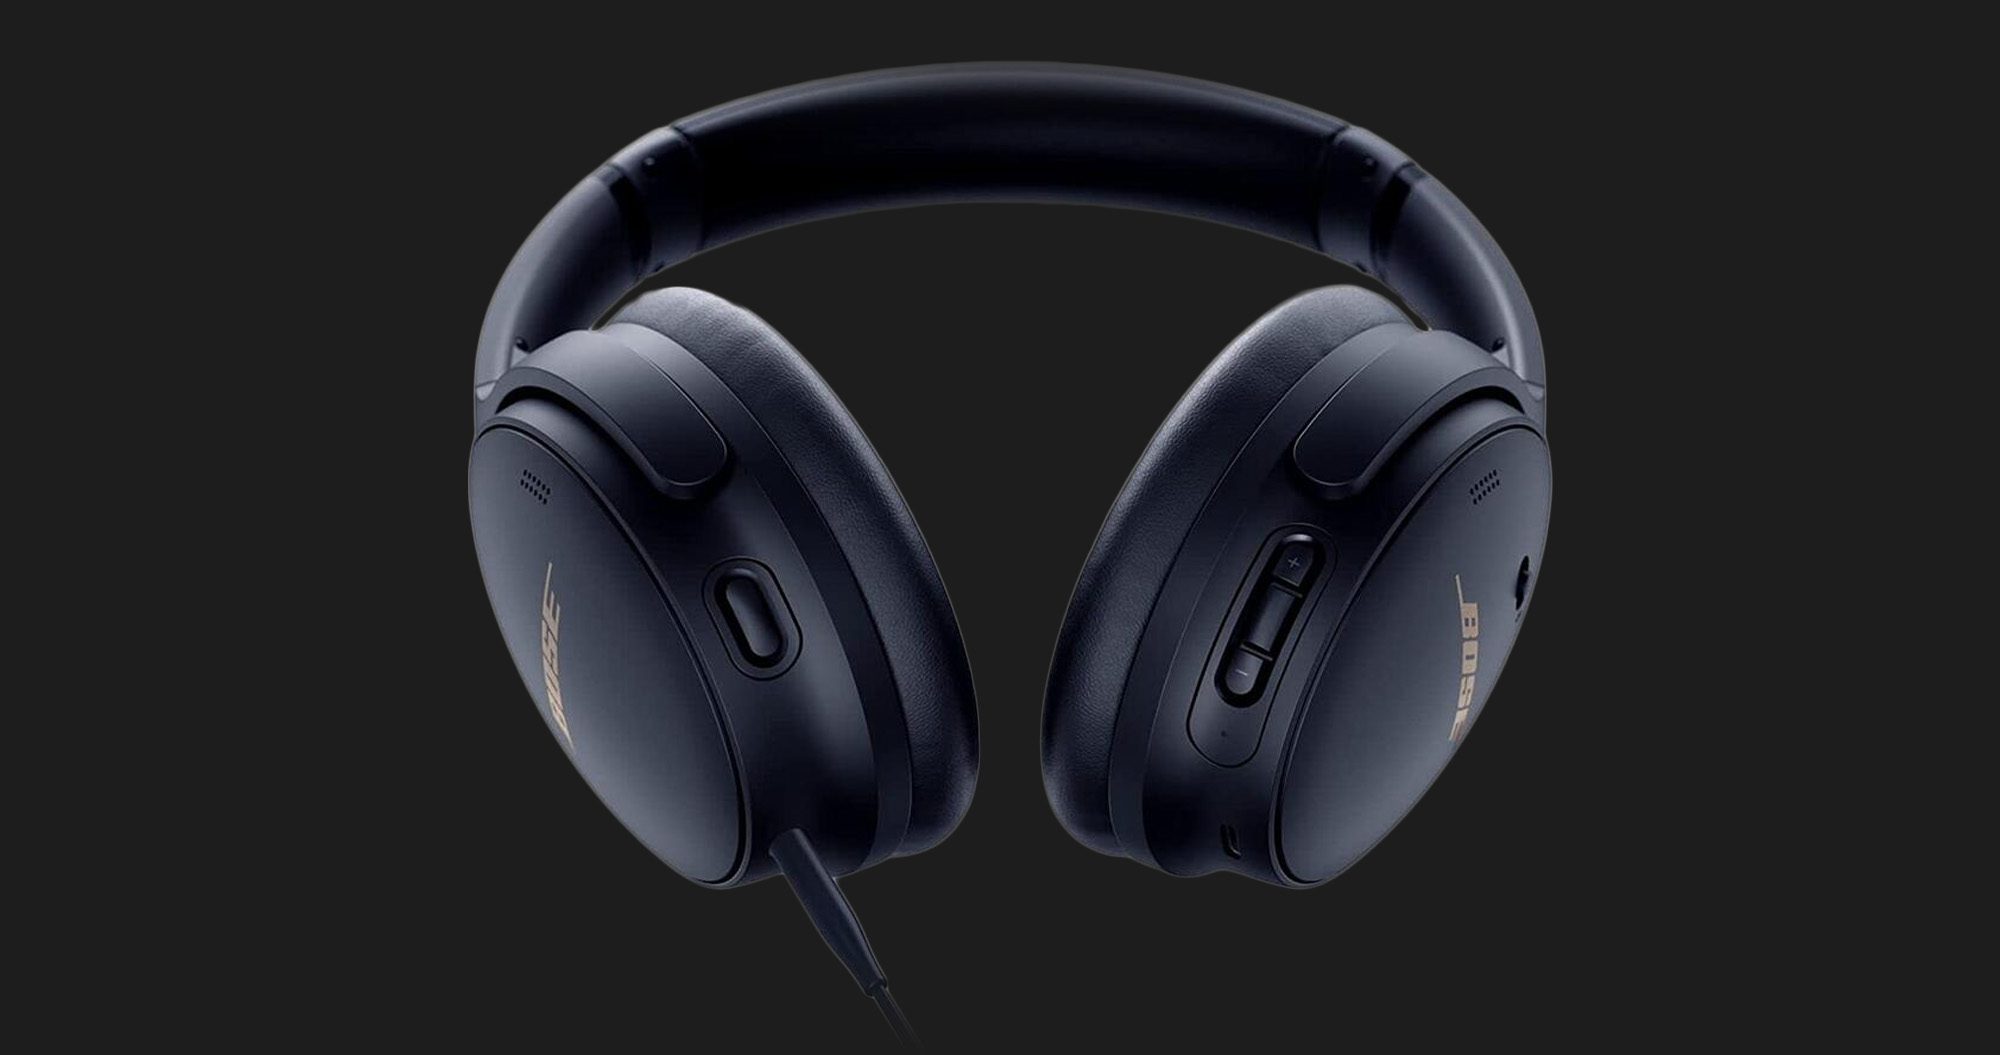 Наушники Bose QuietComfort Headphones (Black)